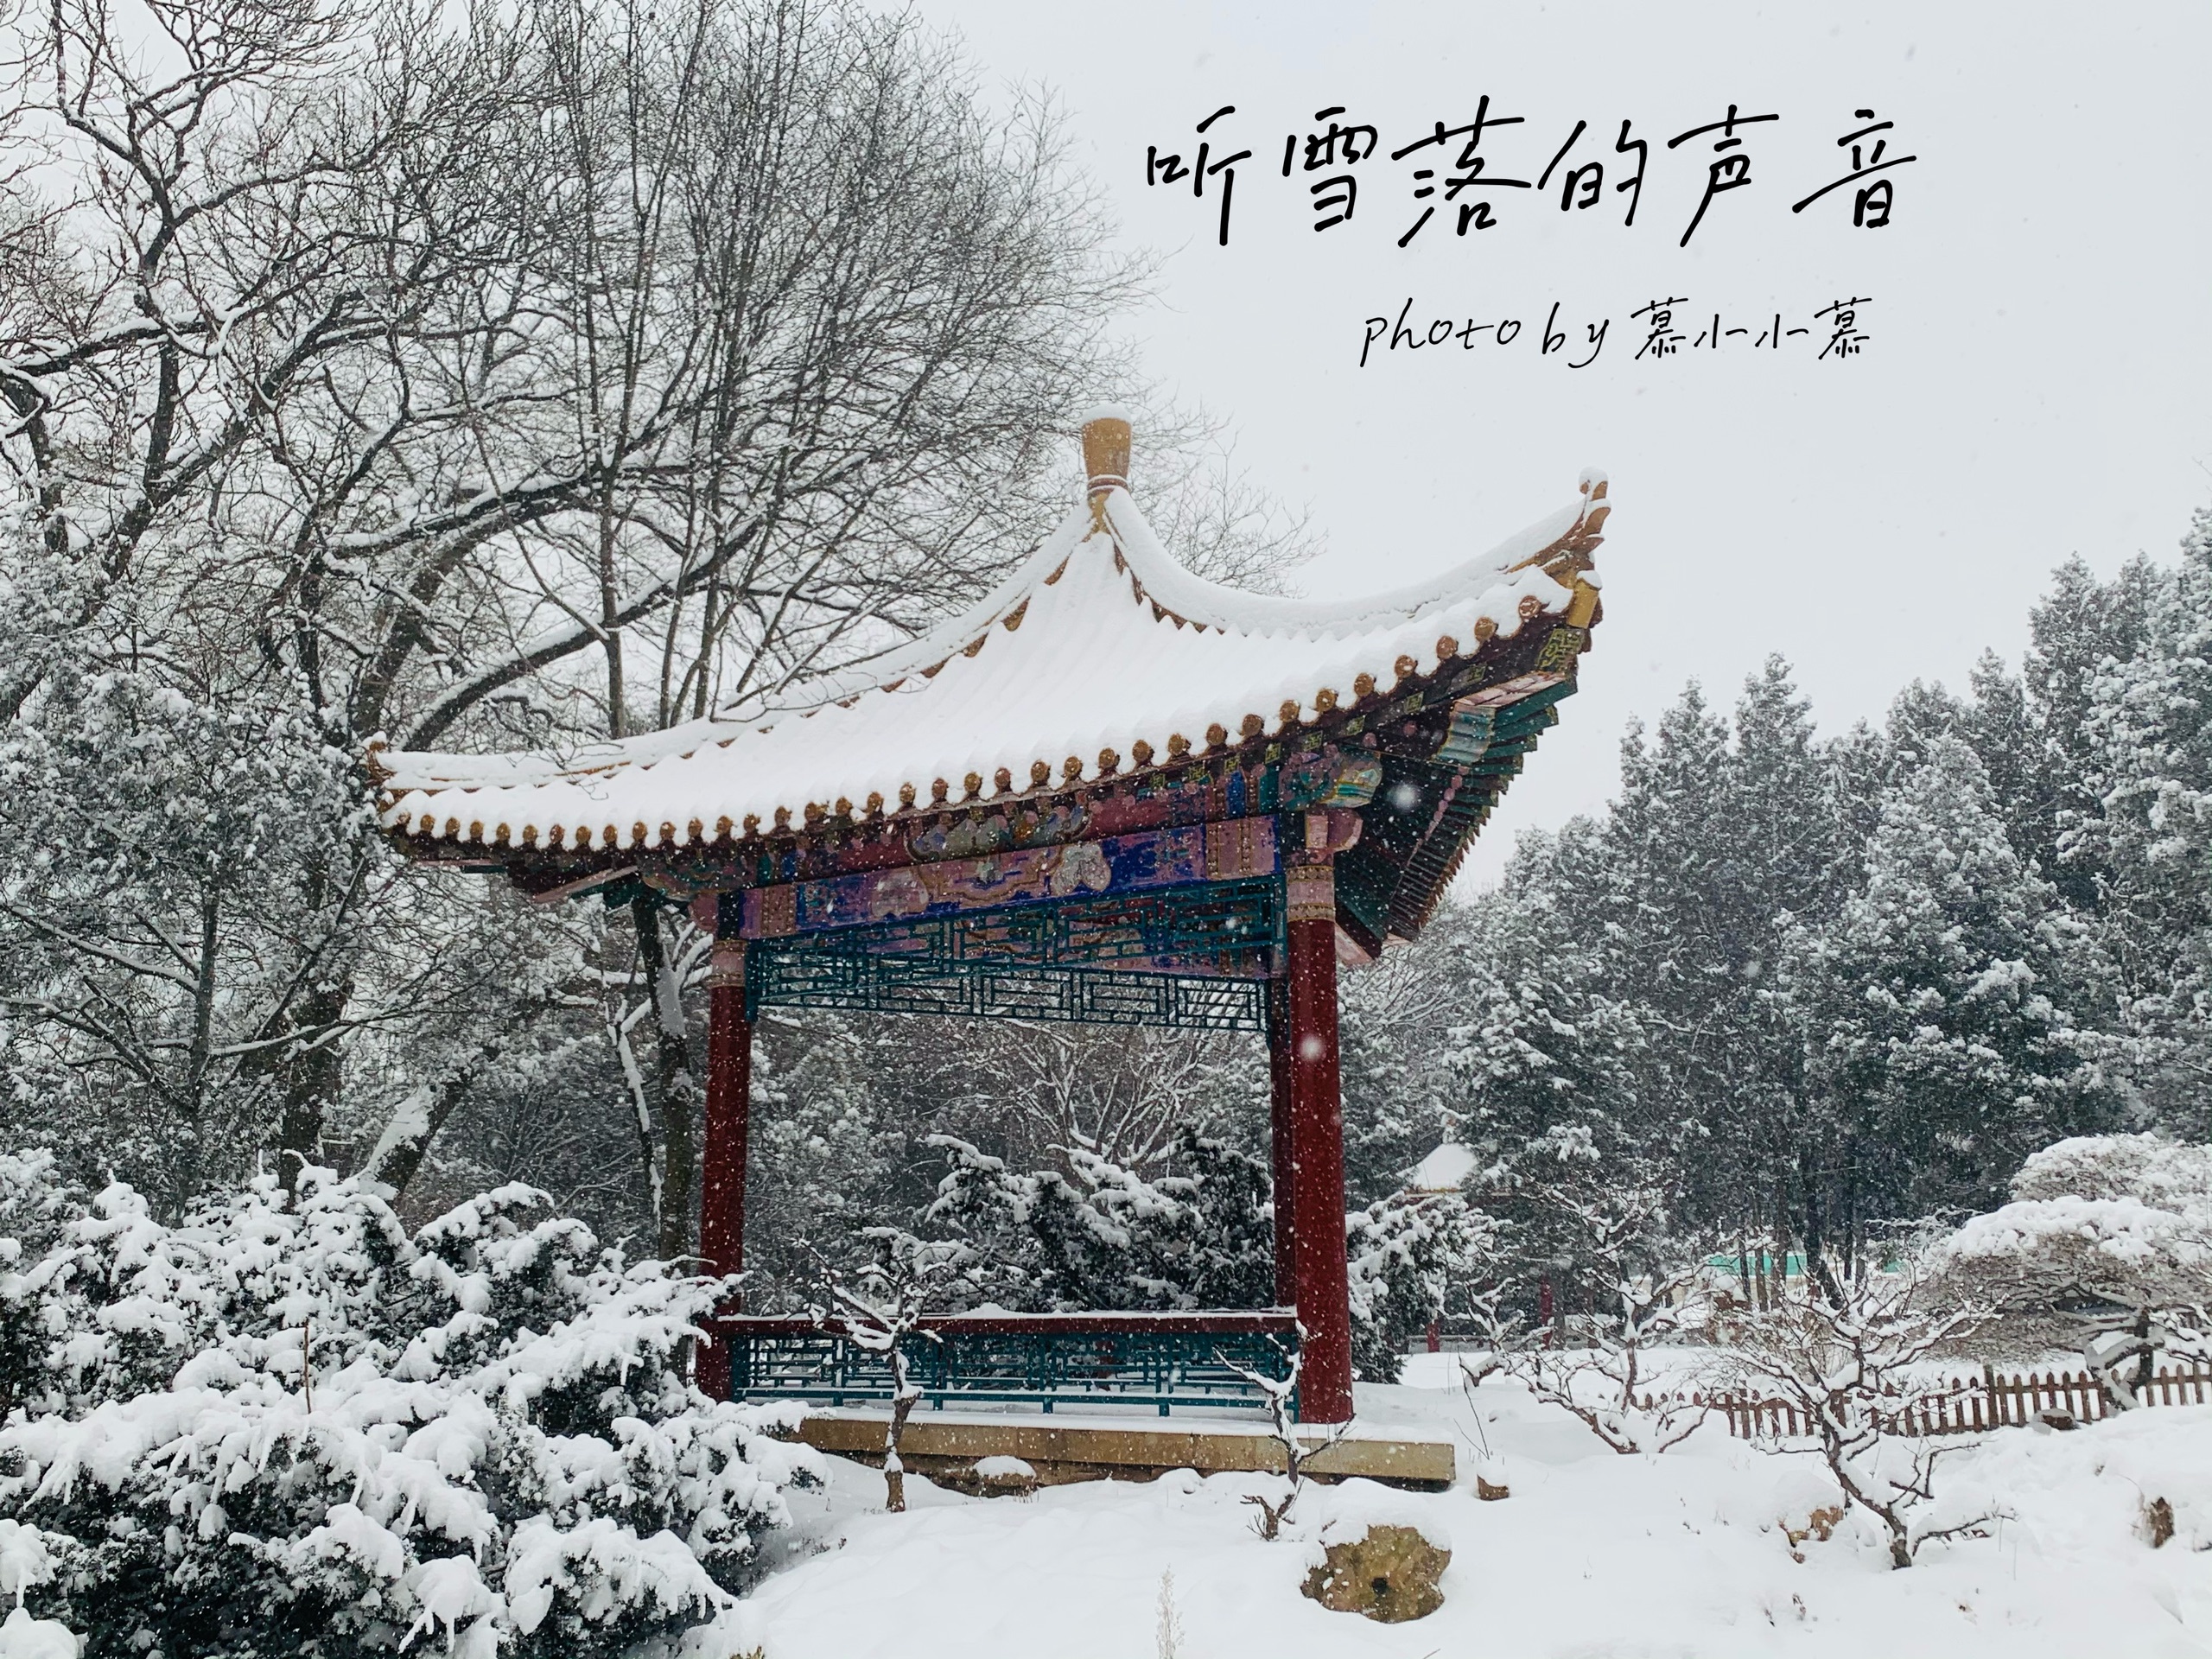 辽宁大连市劳动公园今天～心血来潮～～去拍拍雪景吧